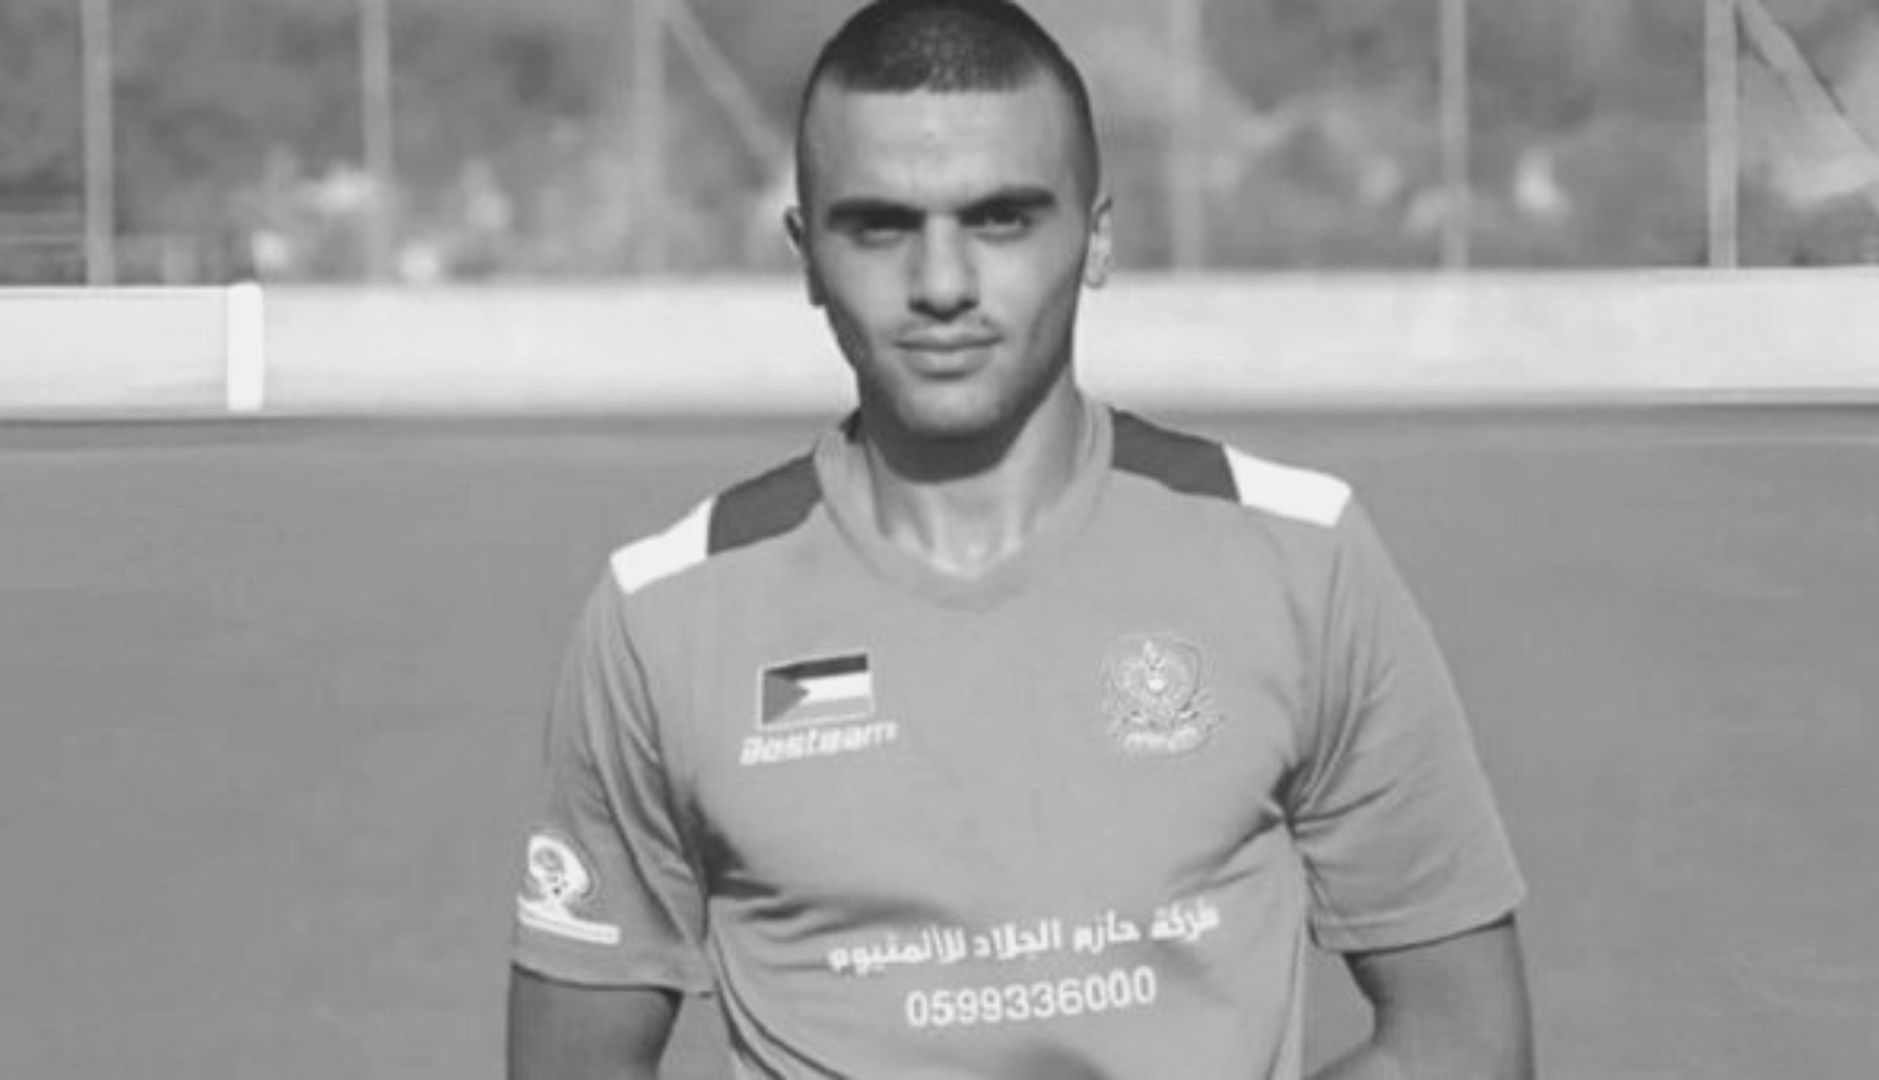 Izrael zabił palestyńskiego piłkarza. Miał 23 lata